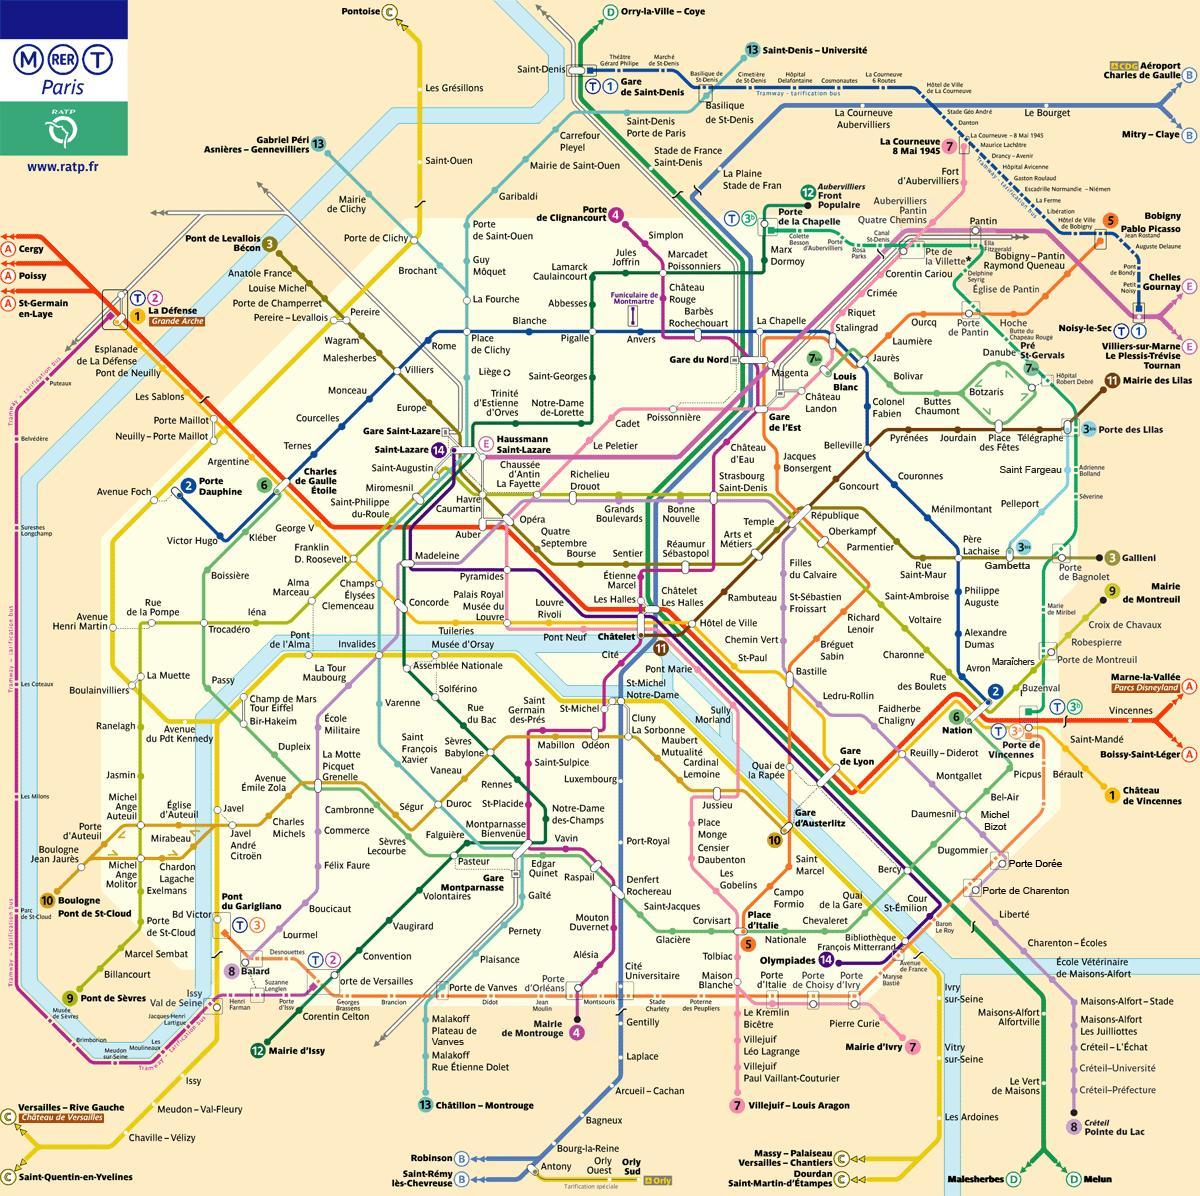 ratp-mapa-del-metro-de-par-s-ratp-mapa-le-de-france-francia